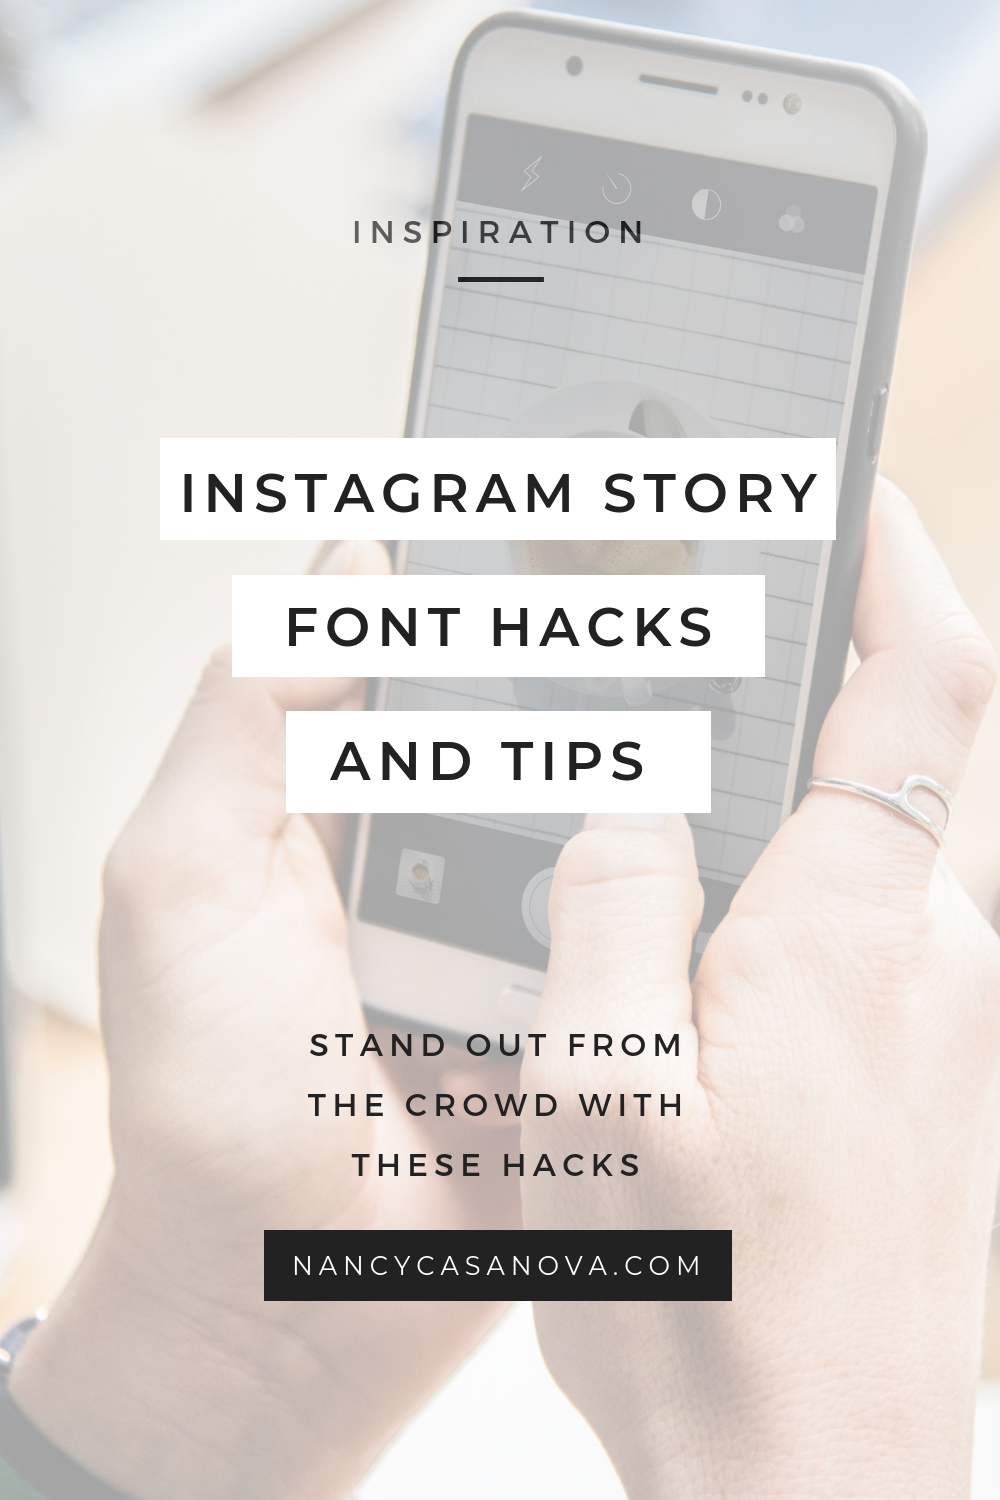 Papyrus font là lựa chọn tuyệt vời cho Instagram Stories năm